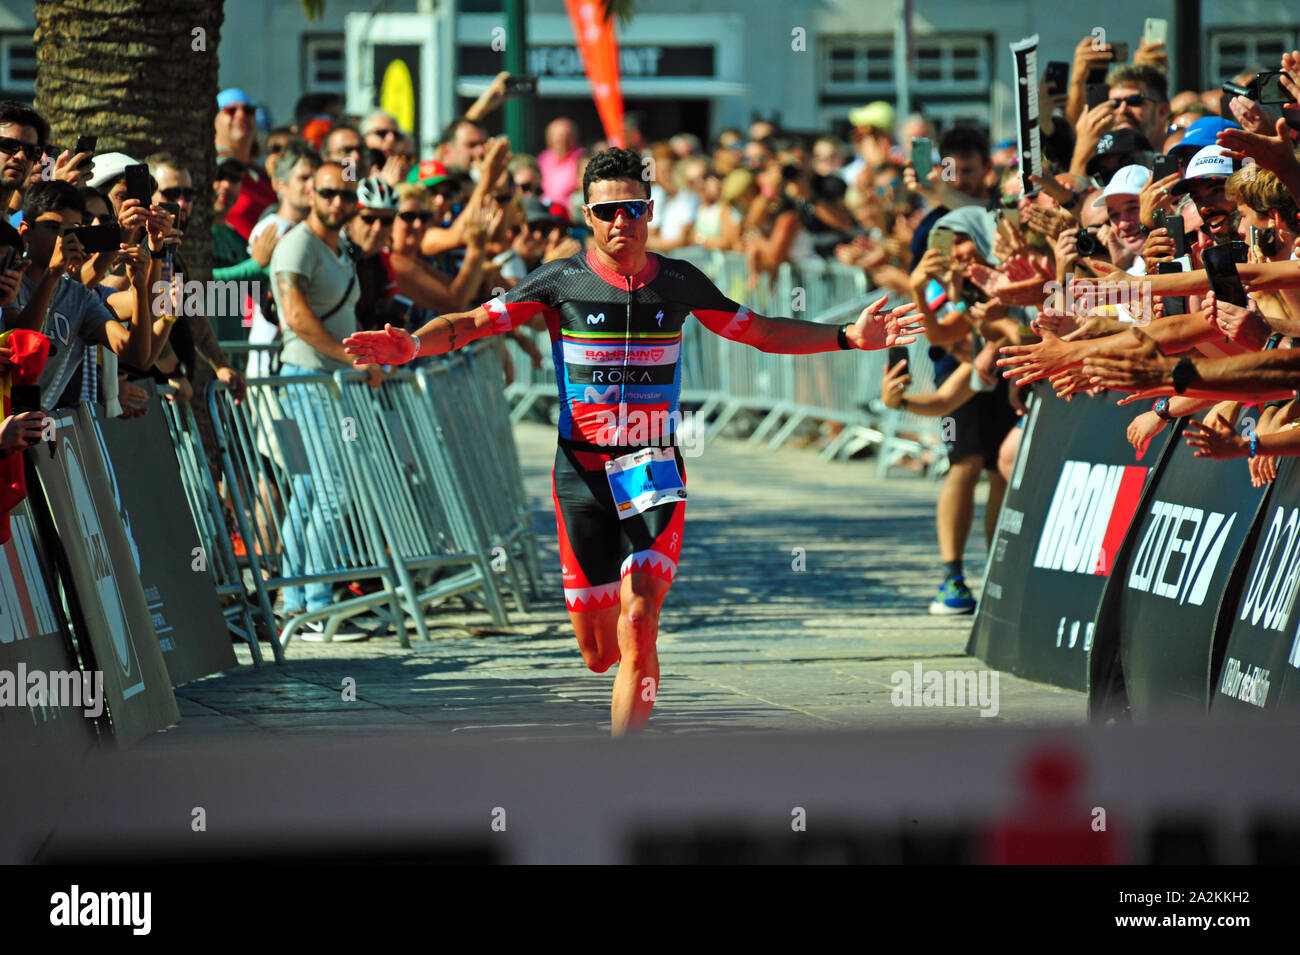 Zieleinlauf Javier Gomez, Sieger Ironman 70.3, Cascais, Portugal Stockfoto